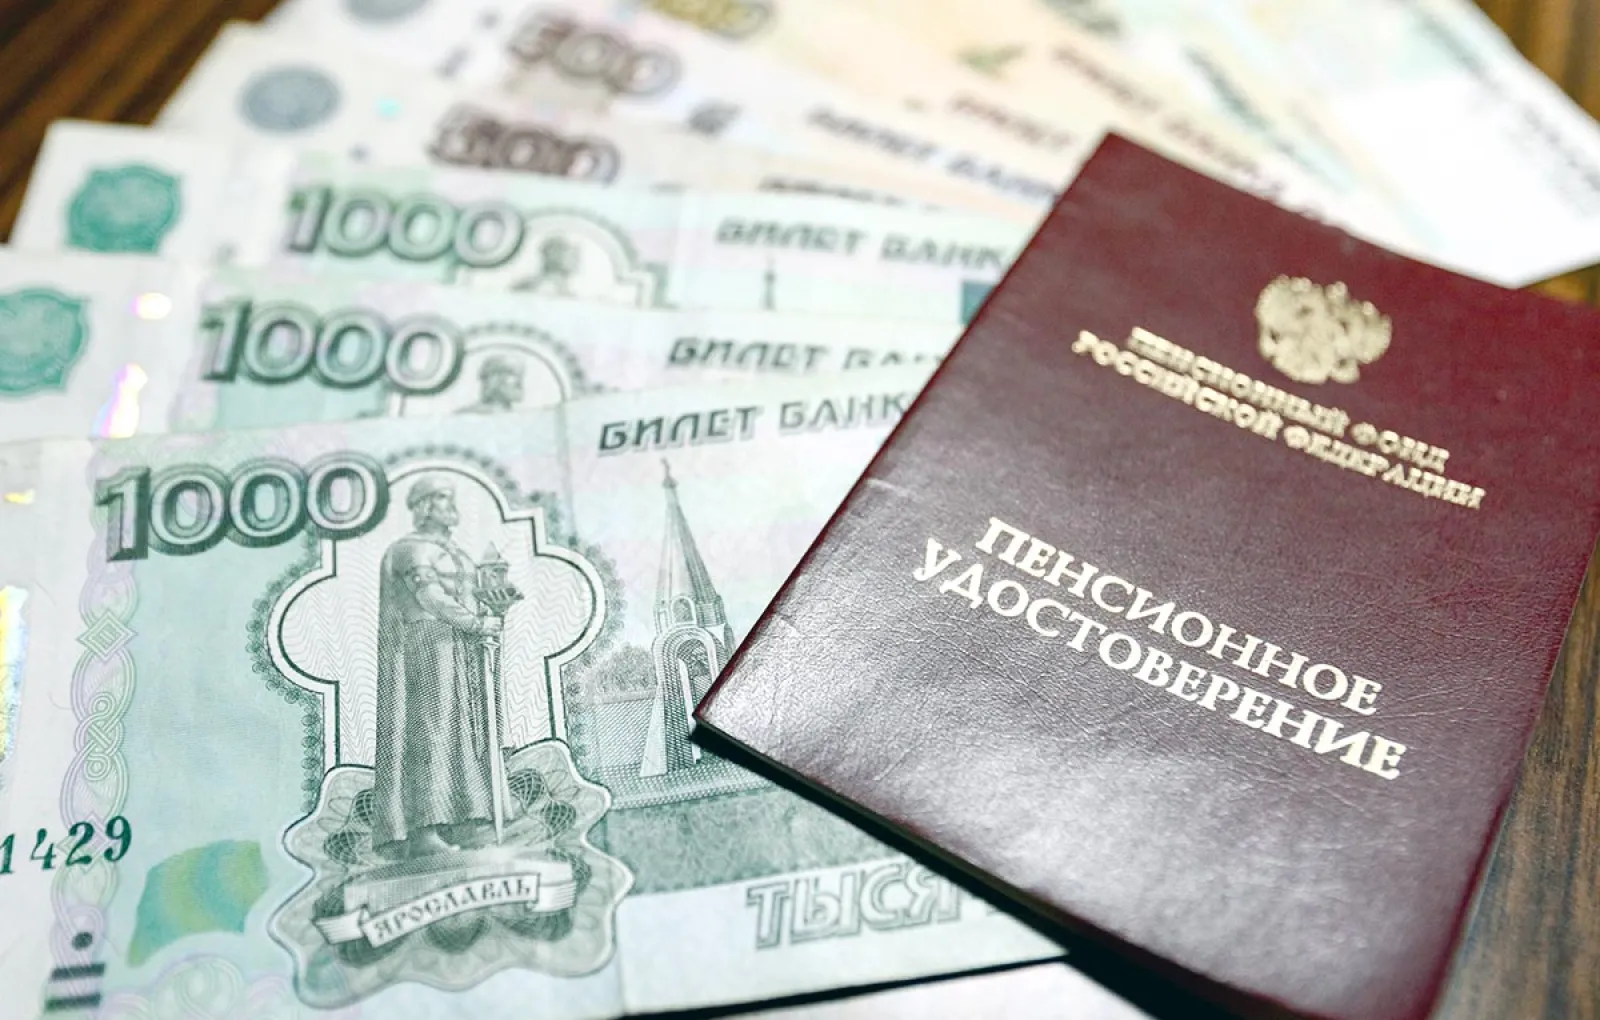 Госдума вводит доплату в 1 200 рублей для пенсионеров от 80 лет